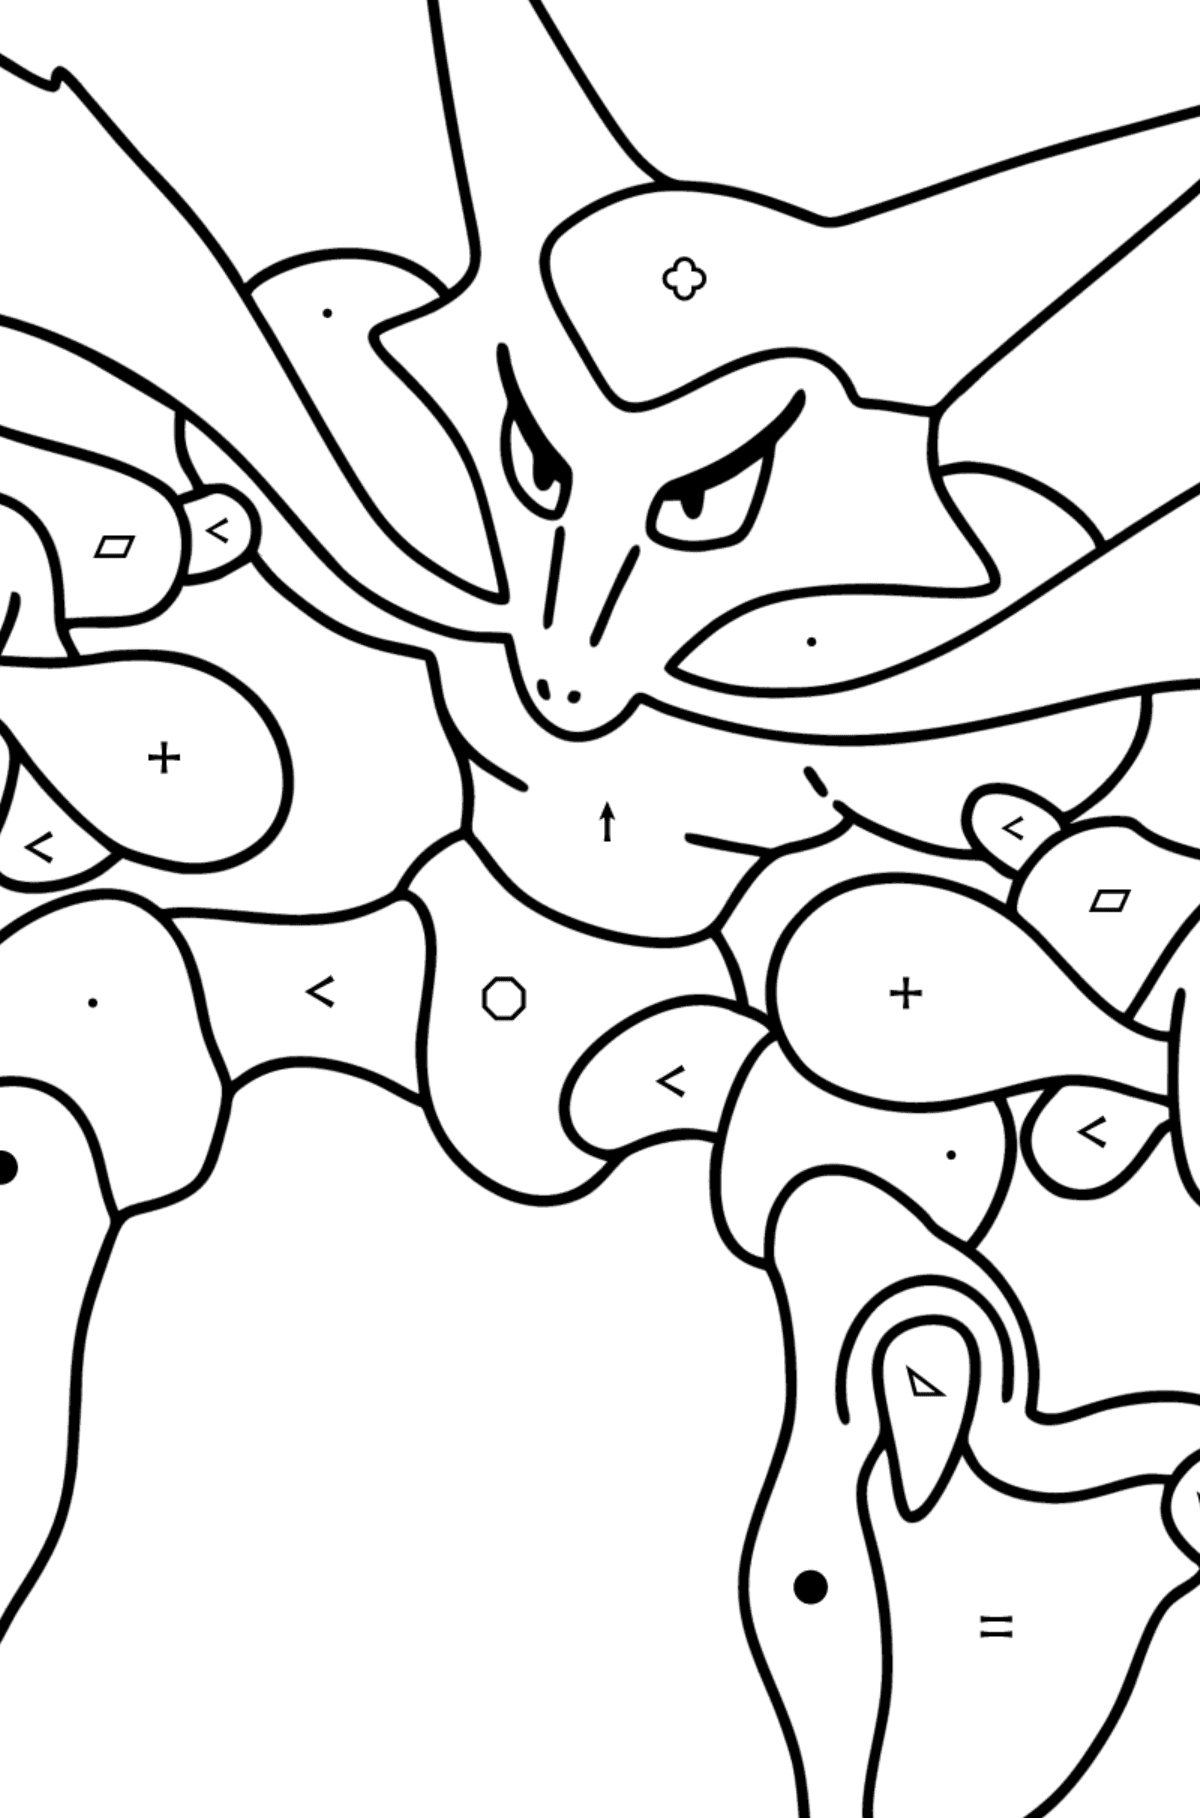 Розмальовка Pokemon Go Alakazam - Розмальовка по Символам і Геометричним Фігурам для дітей